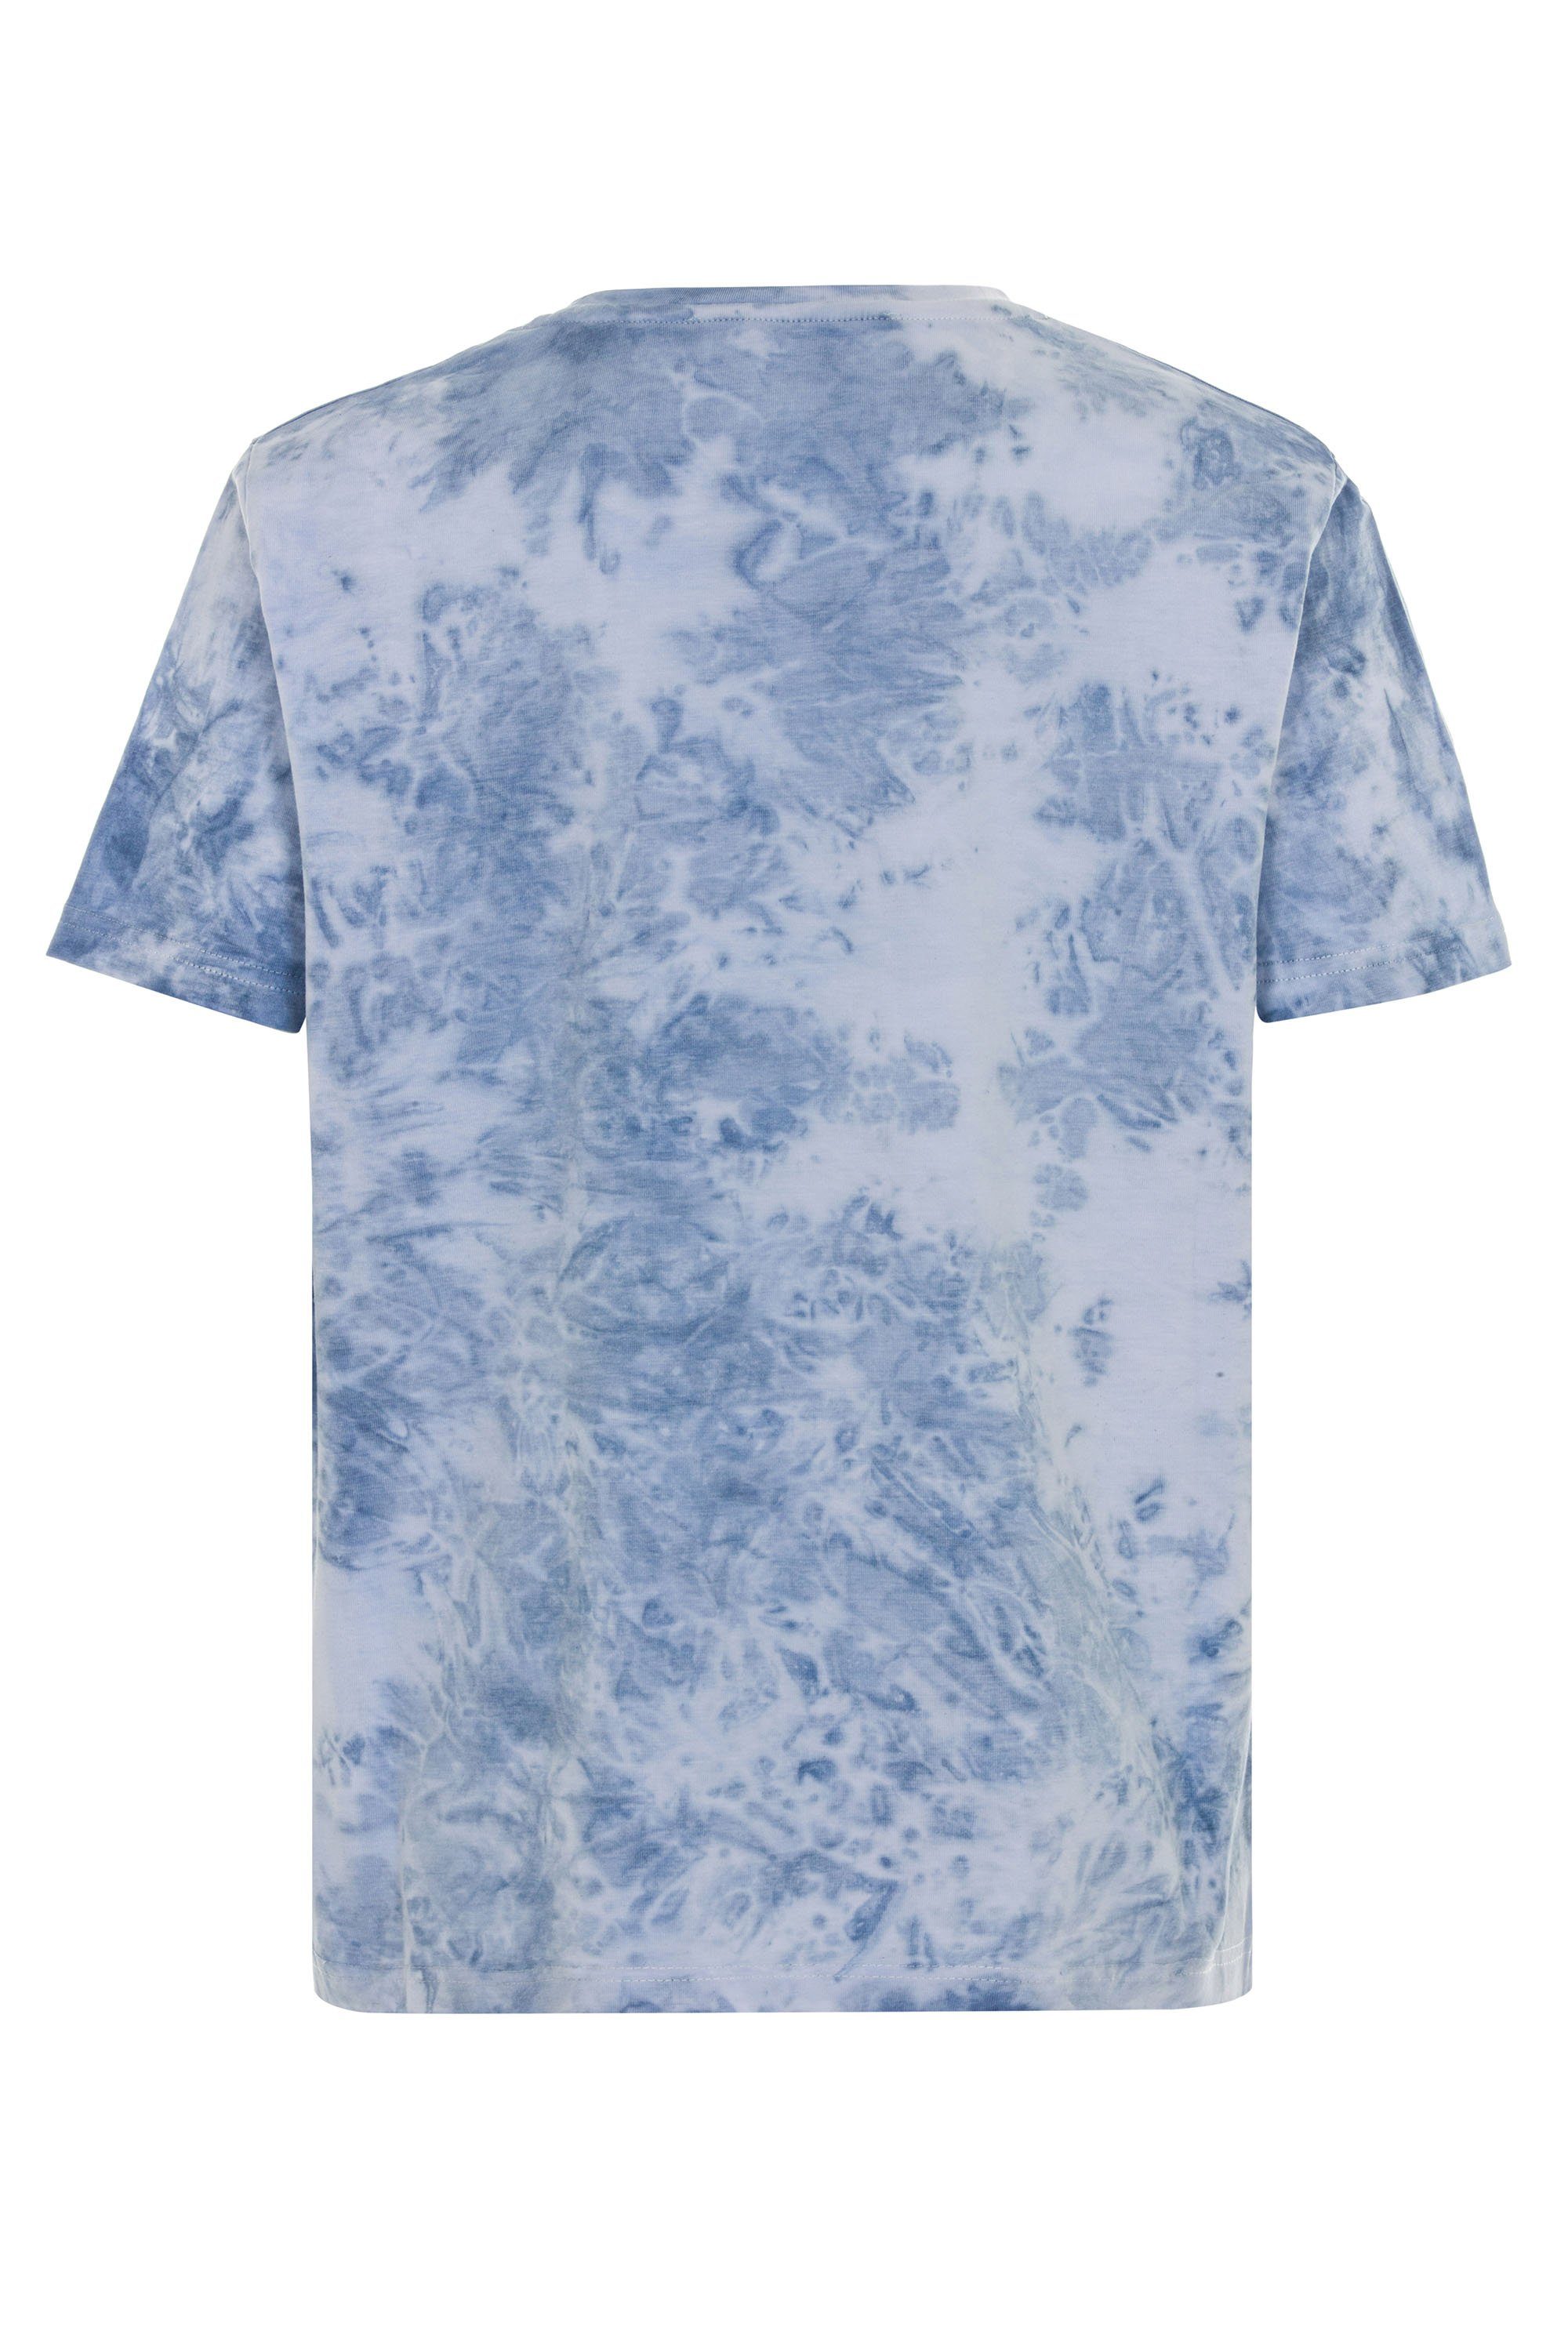 Cipo & Motorrad-Print blau mit coolem T-Shirt Baxx